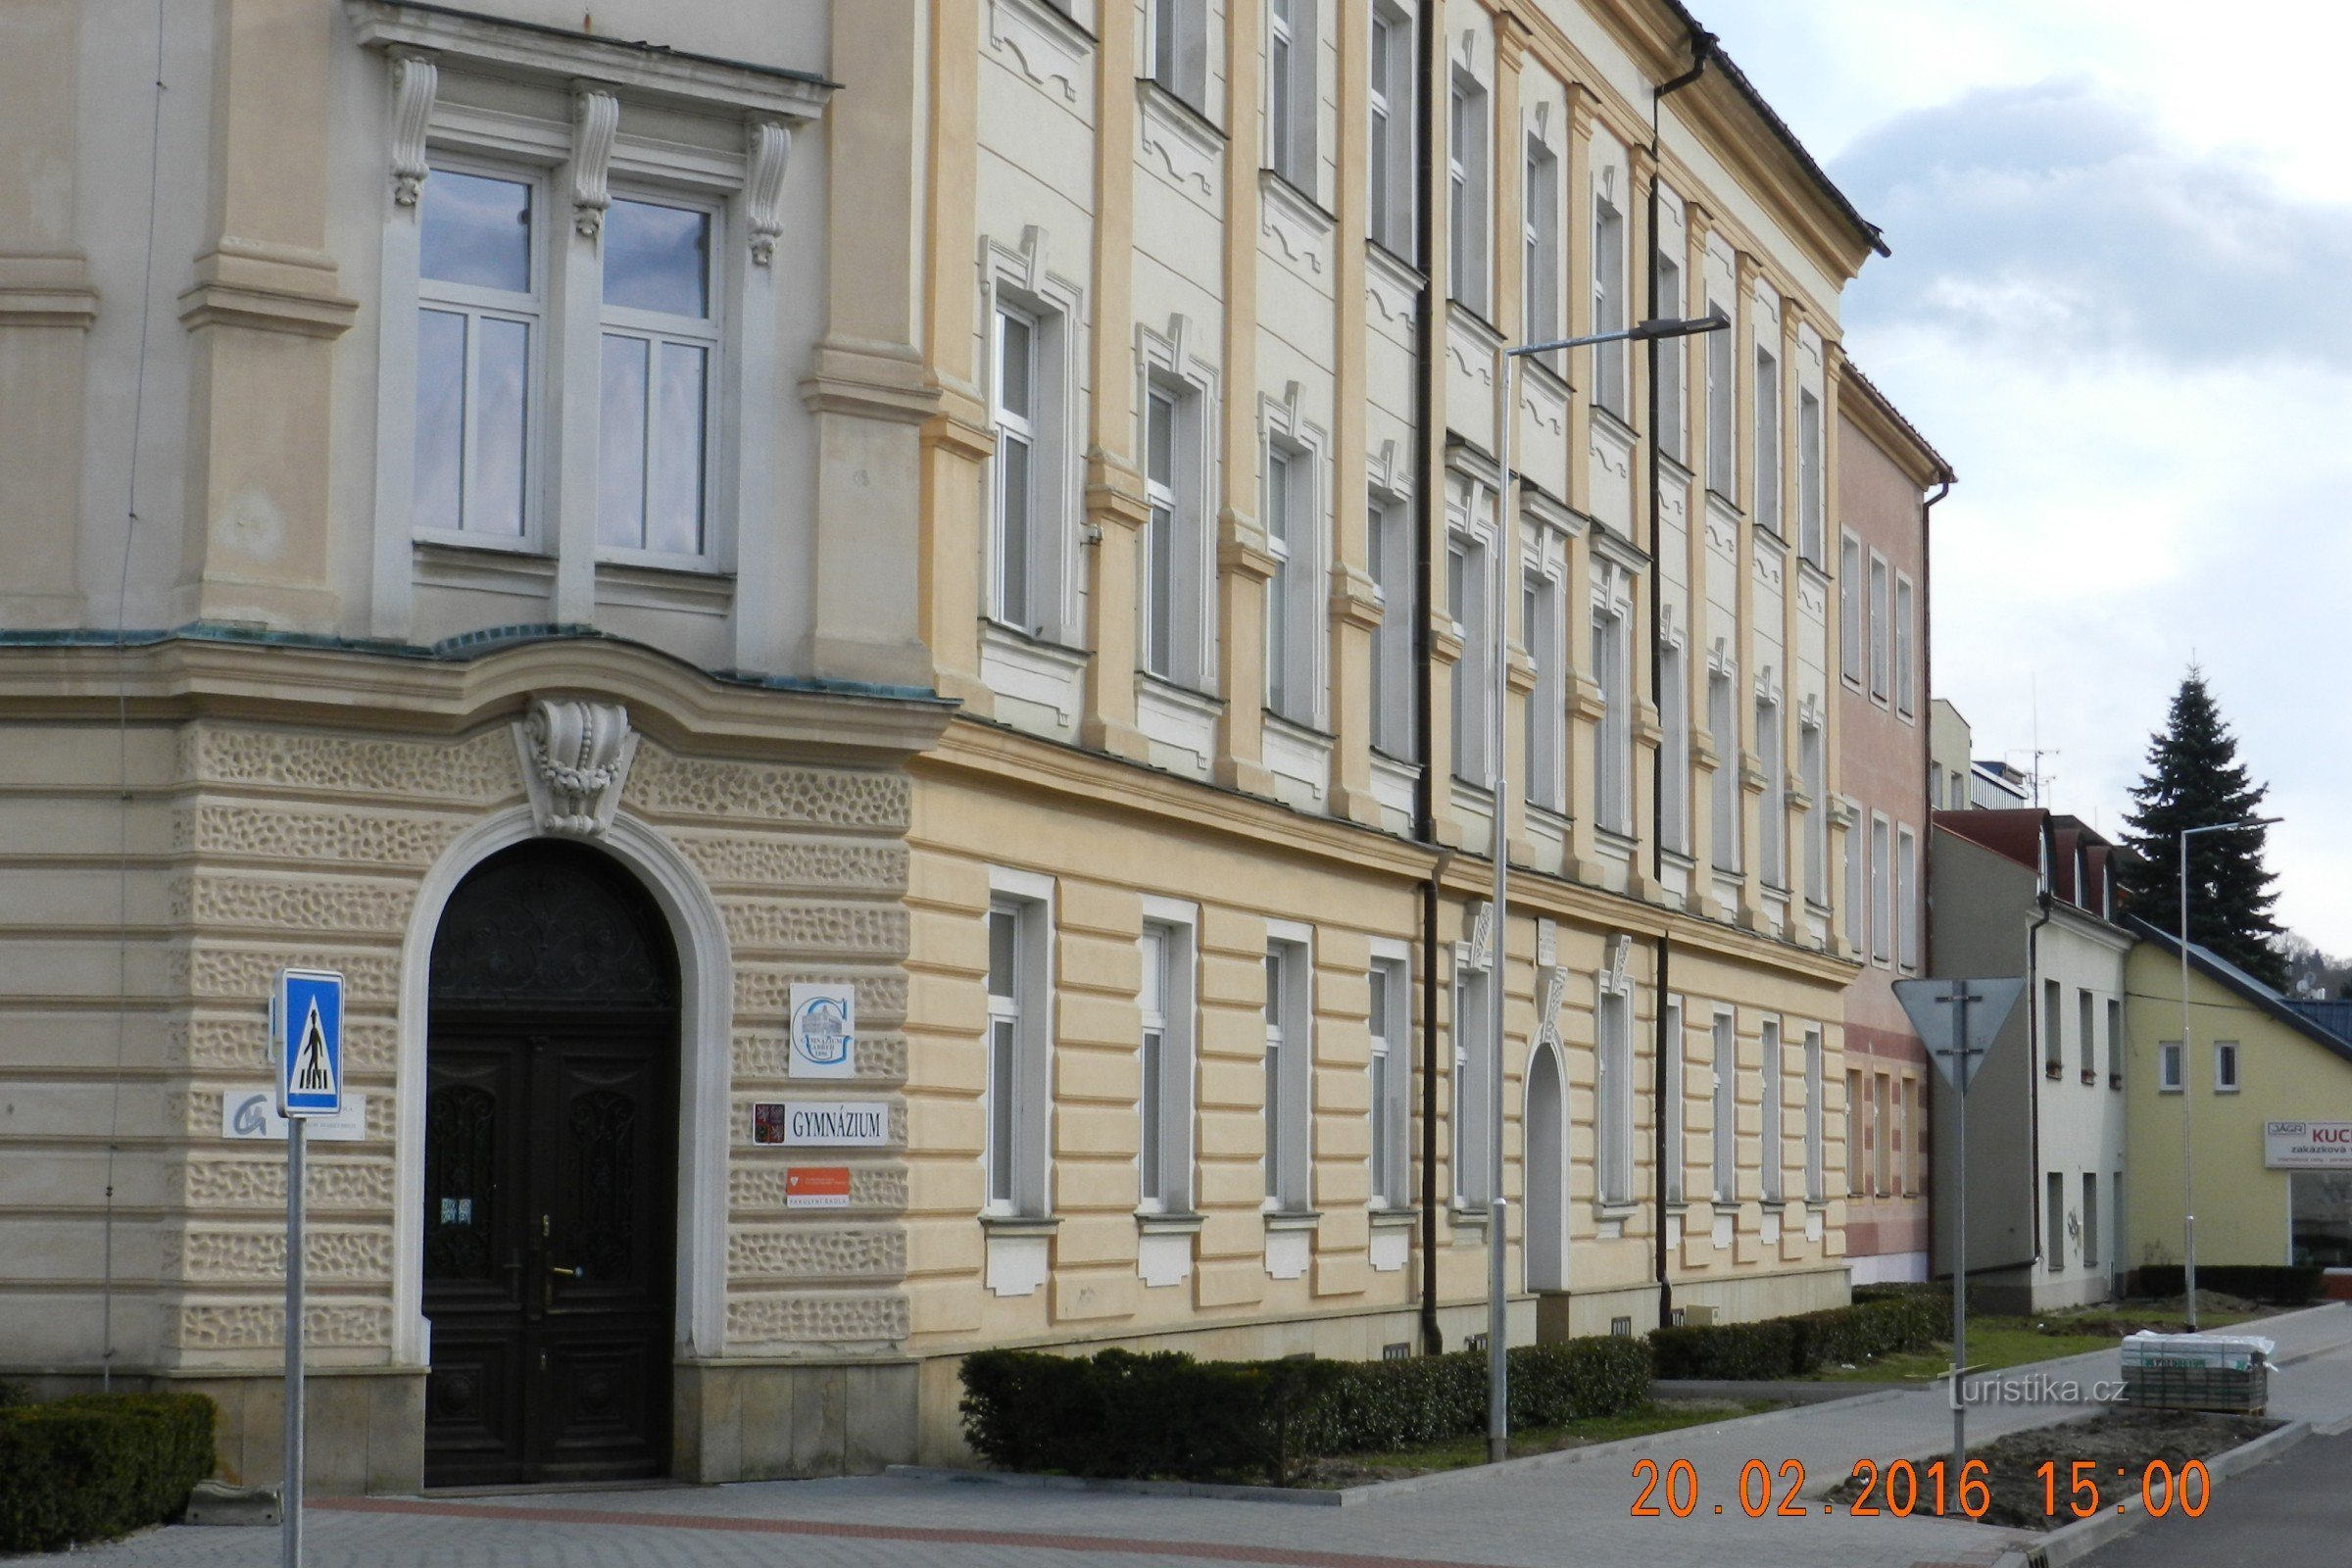 Забржег - здание гимназии - первая и старейшая средняя школа в Северо-Западной Моравии.